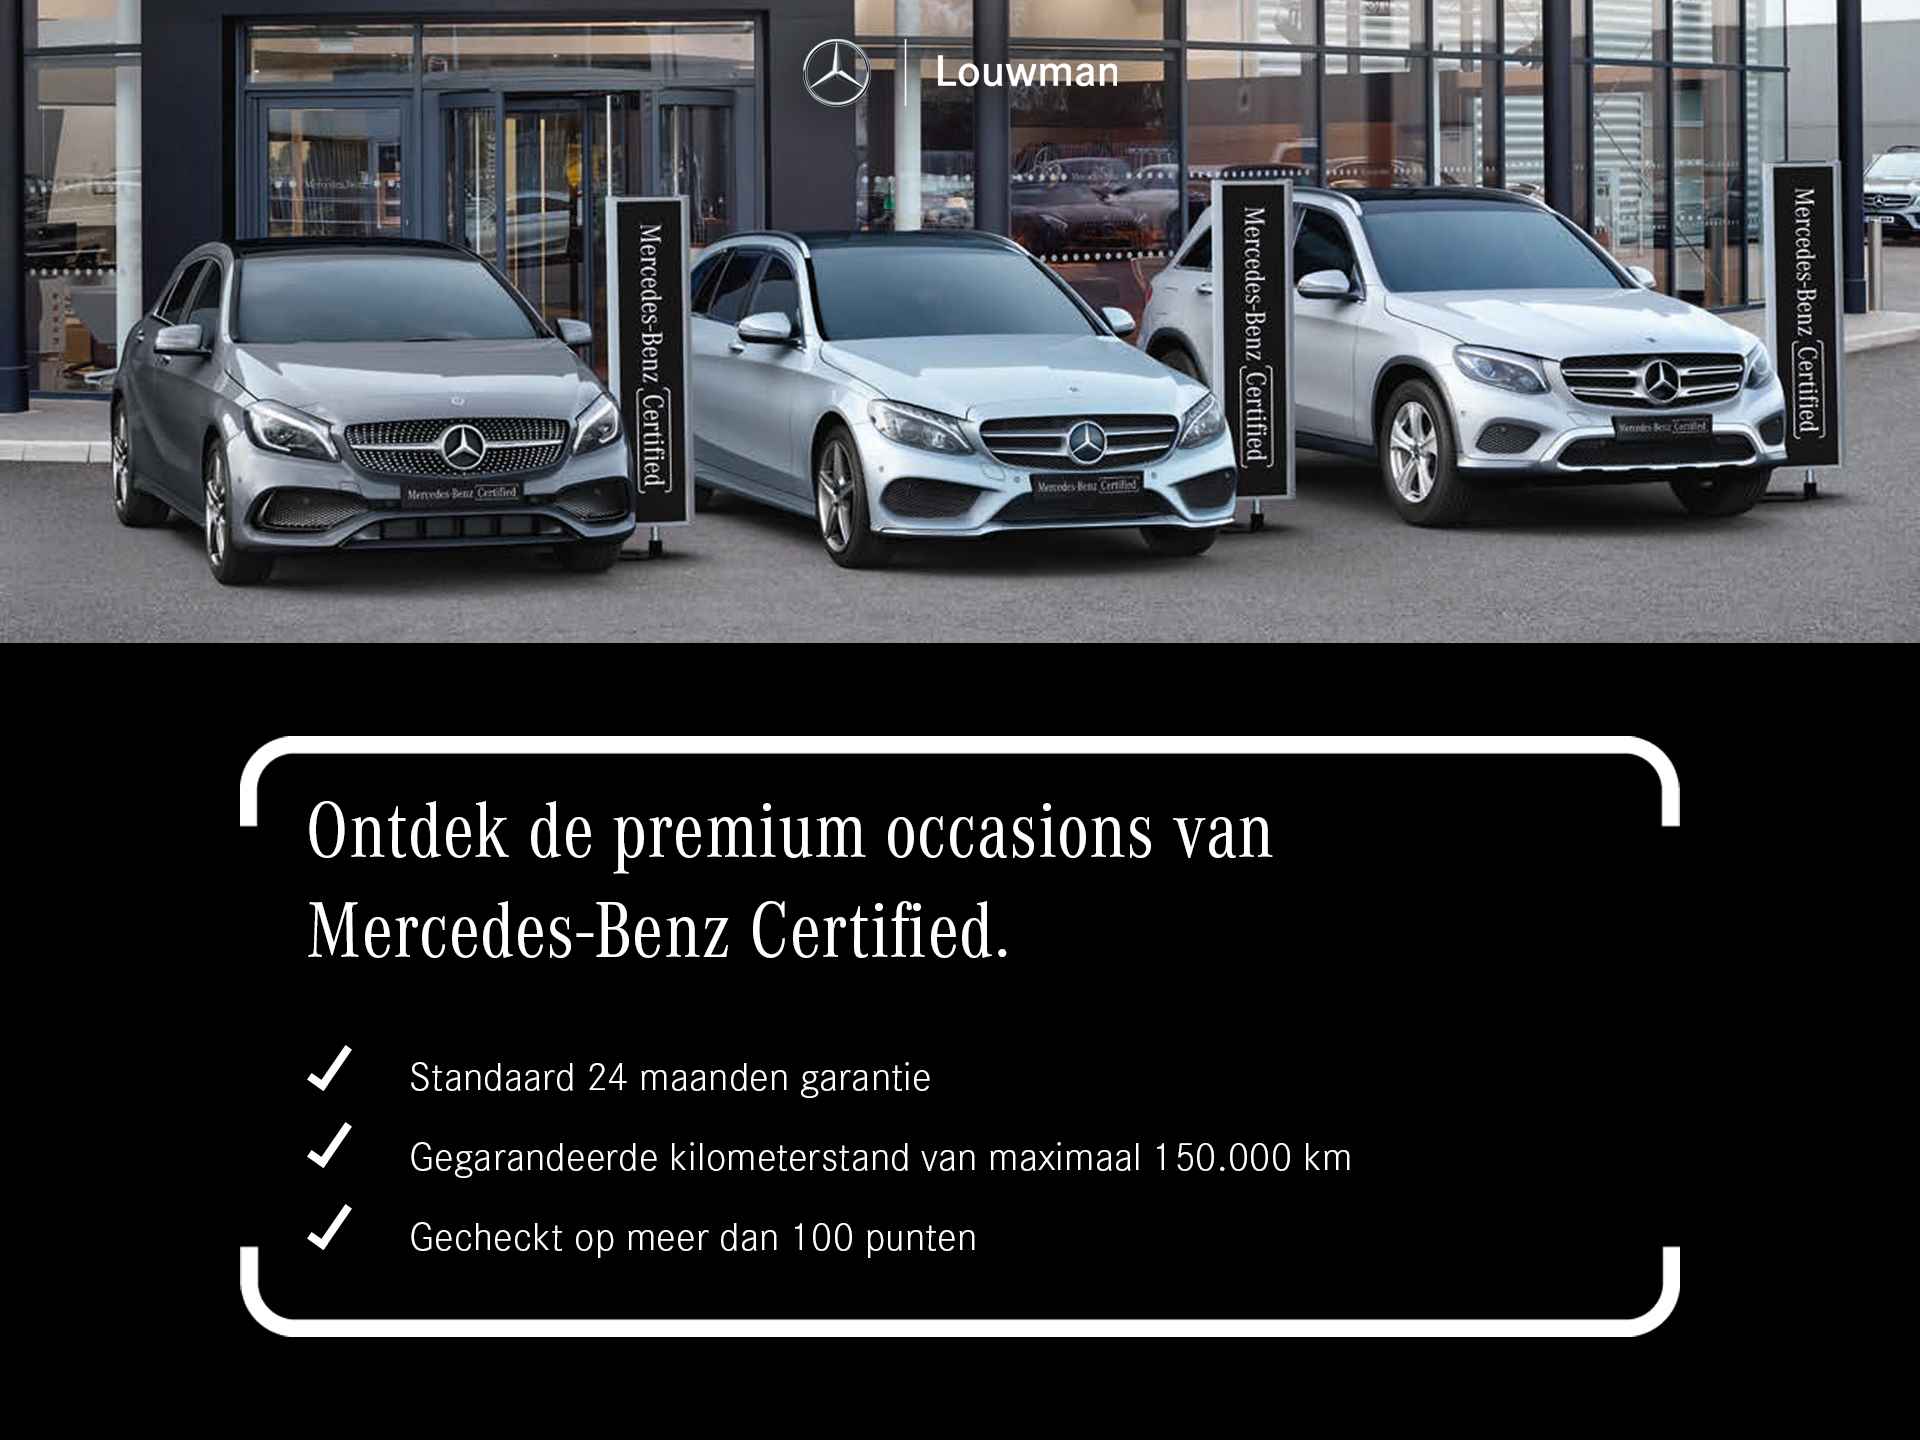 Mercedes-Benz GLA 200 AMG Premium Plus Limited | Multispaaks lichtmetalen velgen | Treeplanken | Navigatie | Parking support | Leder bekleding | inclusief 24 maanden MB Certified garantie voor europa - 38/39